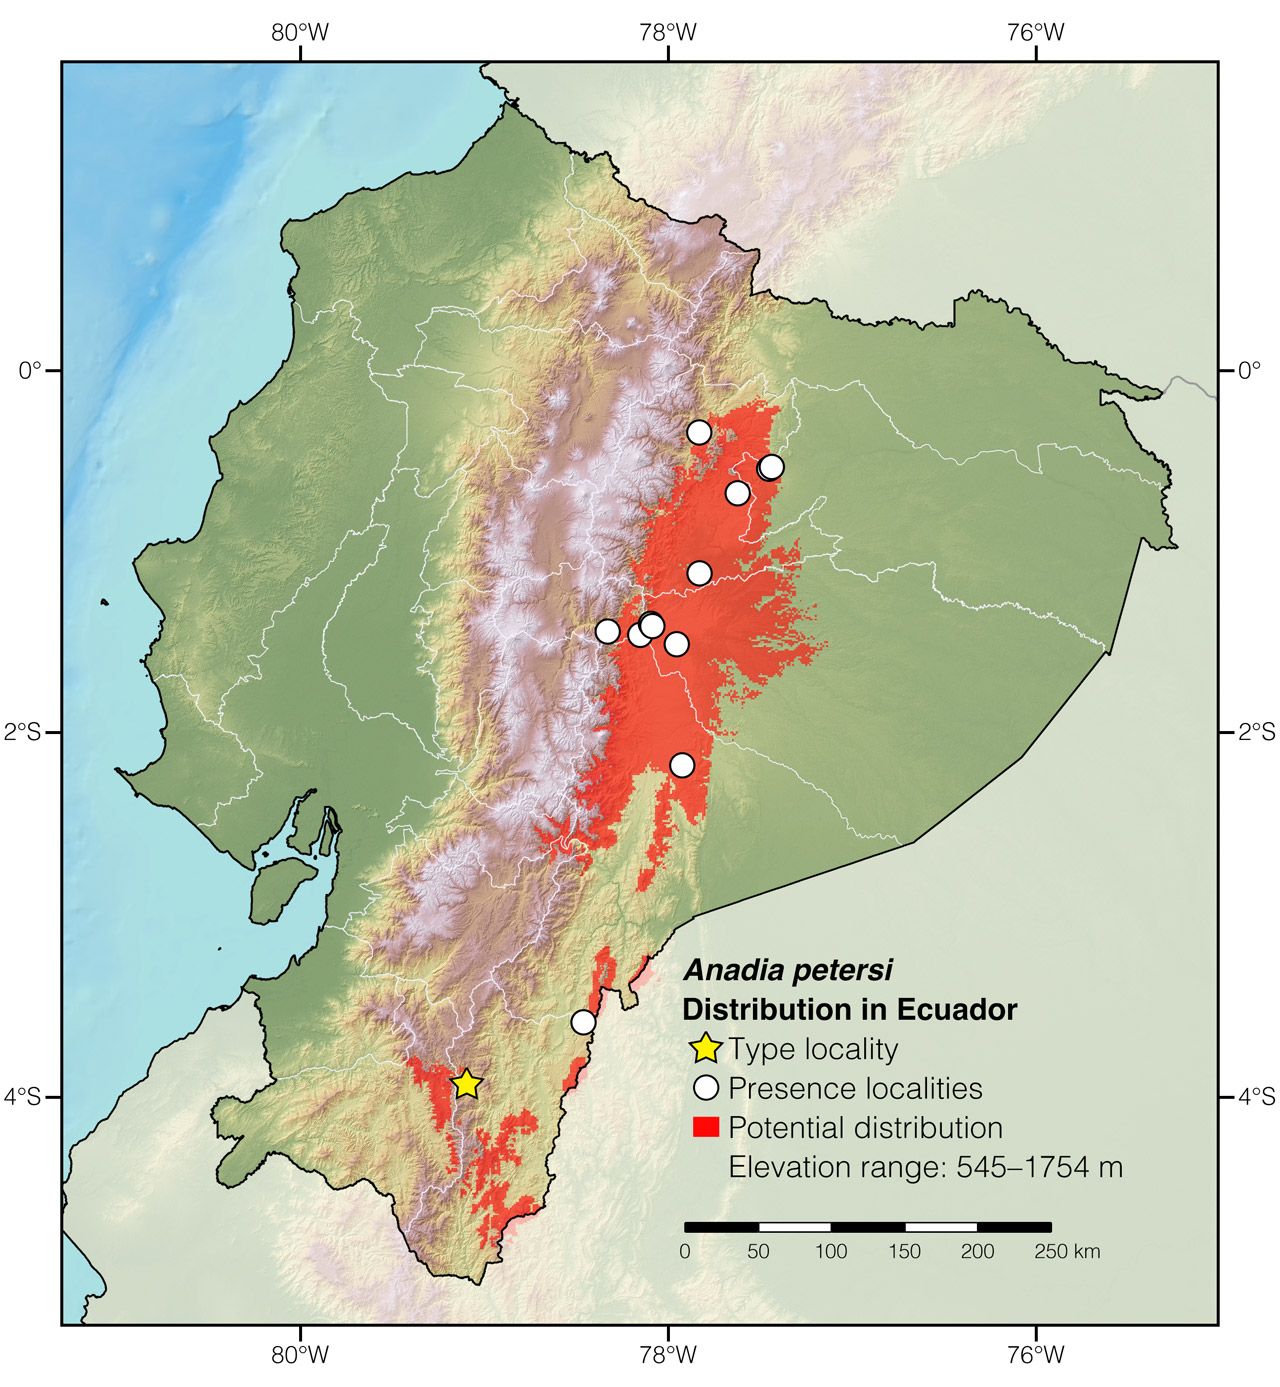 Distribution of Anadia petersi in Ecuador